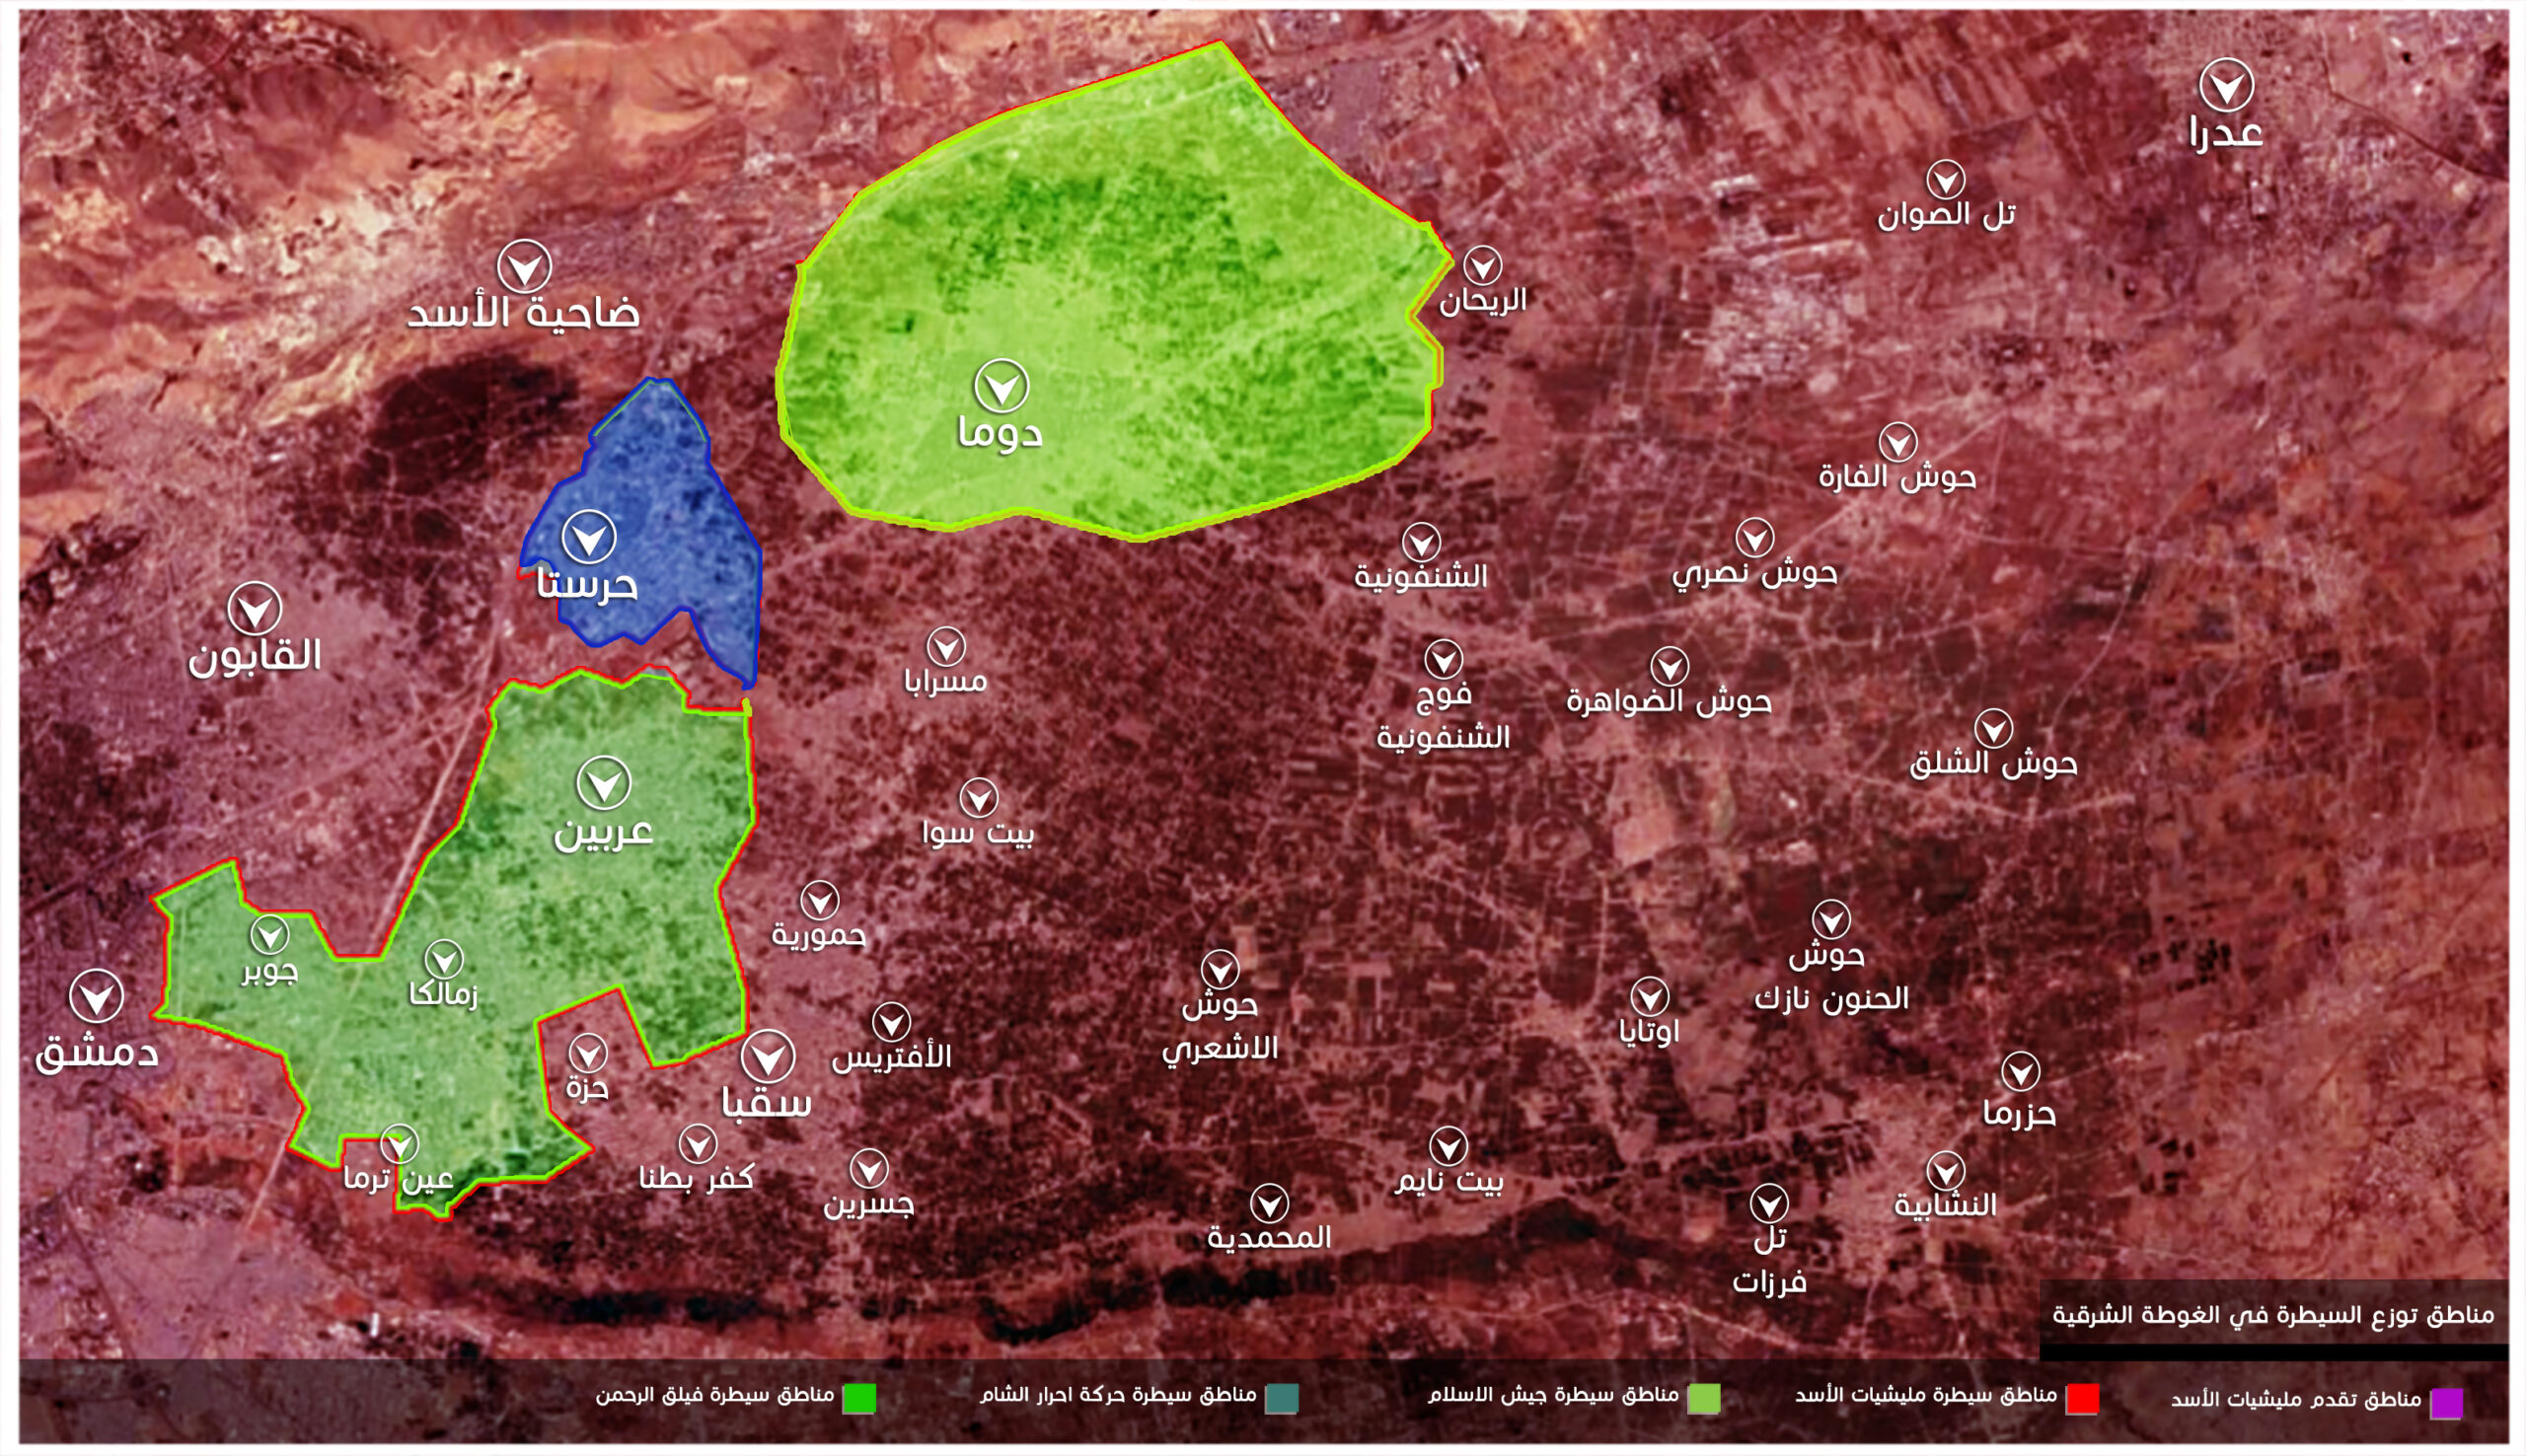 توزع السيطرة في الغوطة الشرقية بعد سيطرة قوات النظام على حزة وكفربطنا